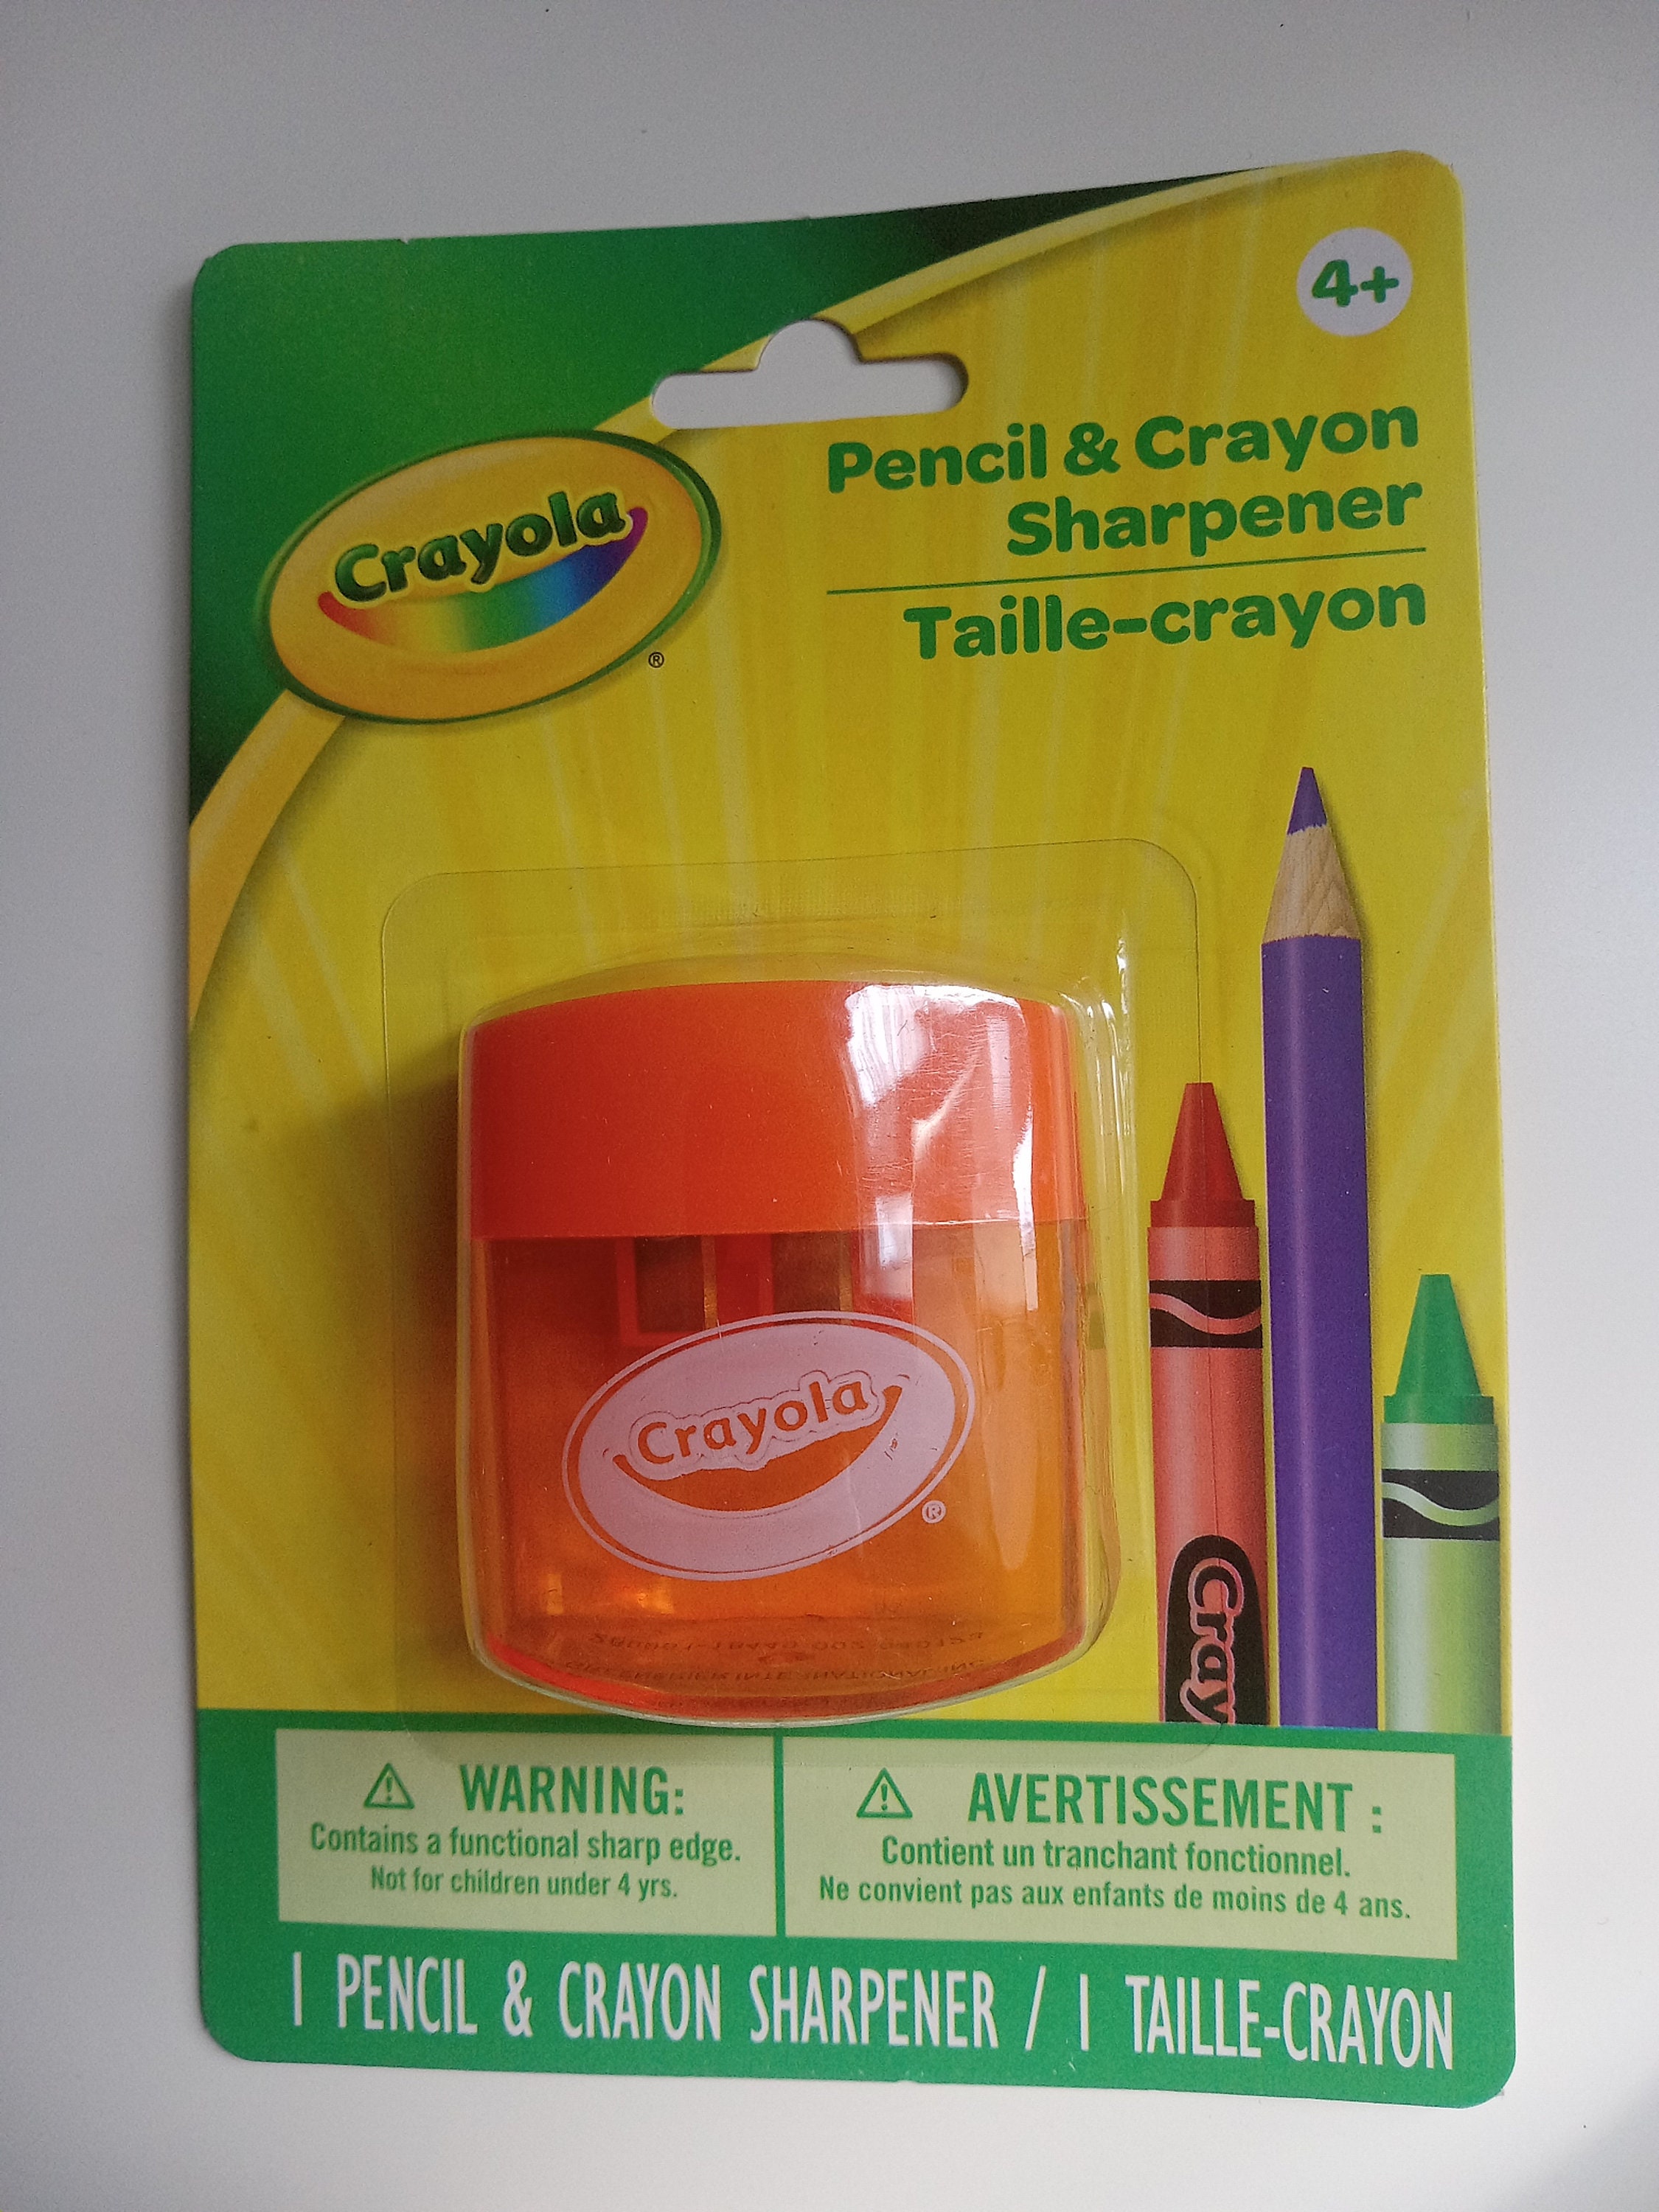 Indigo Crayons 45 Crayons Crayola Crayons Bulk Crayons Refill